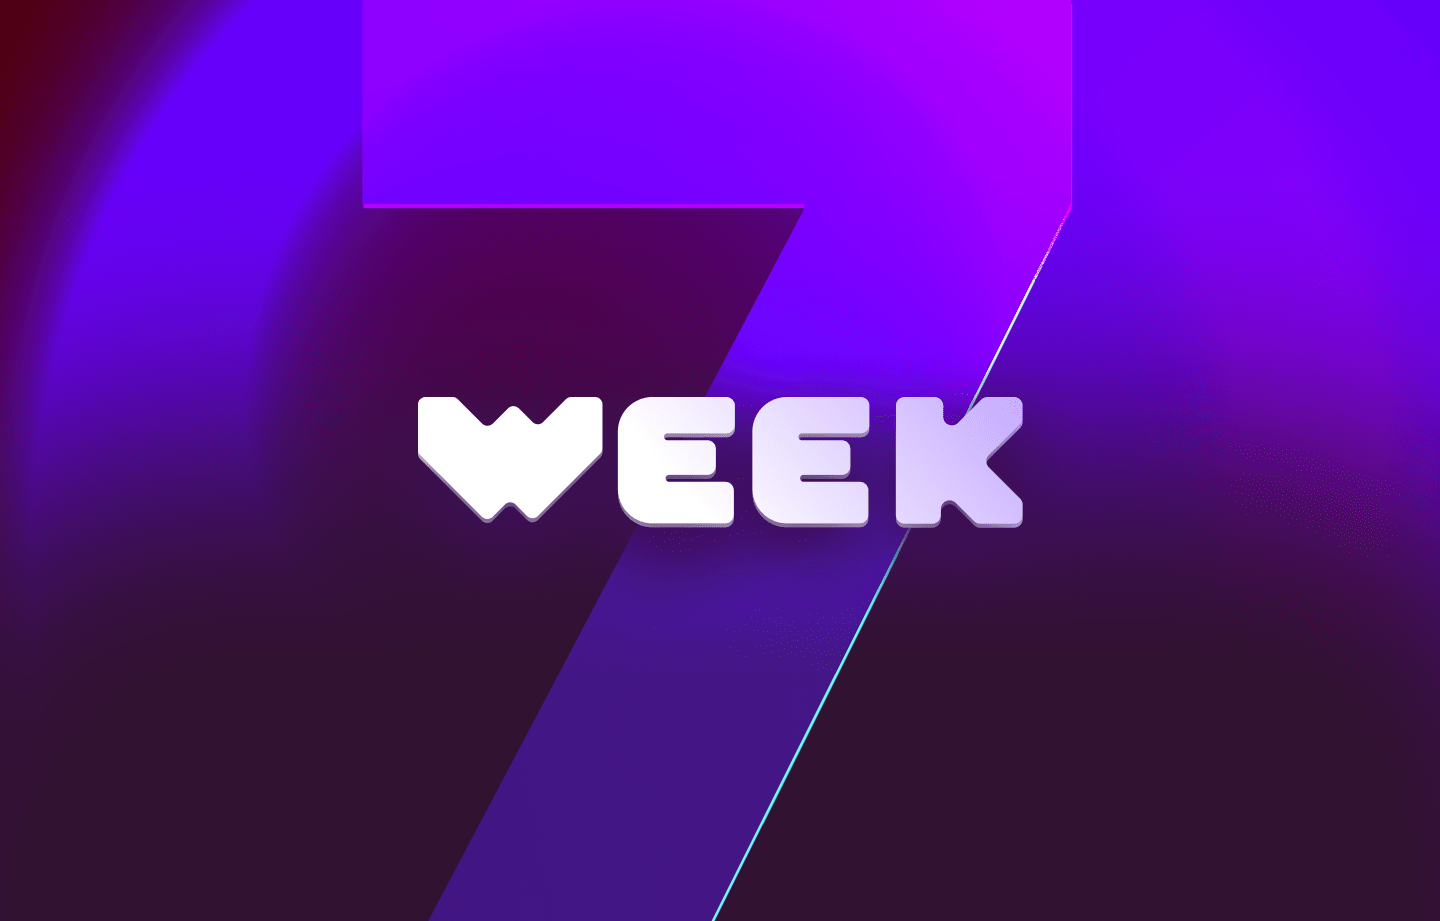 This week in web3 #7